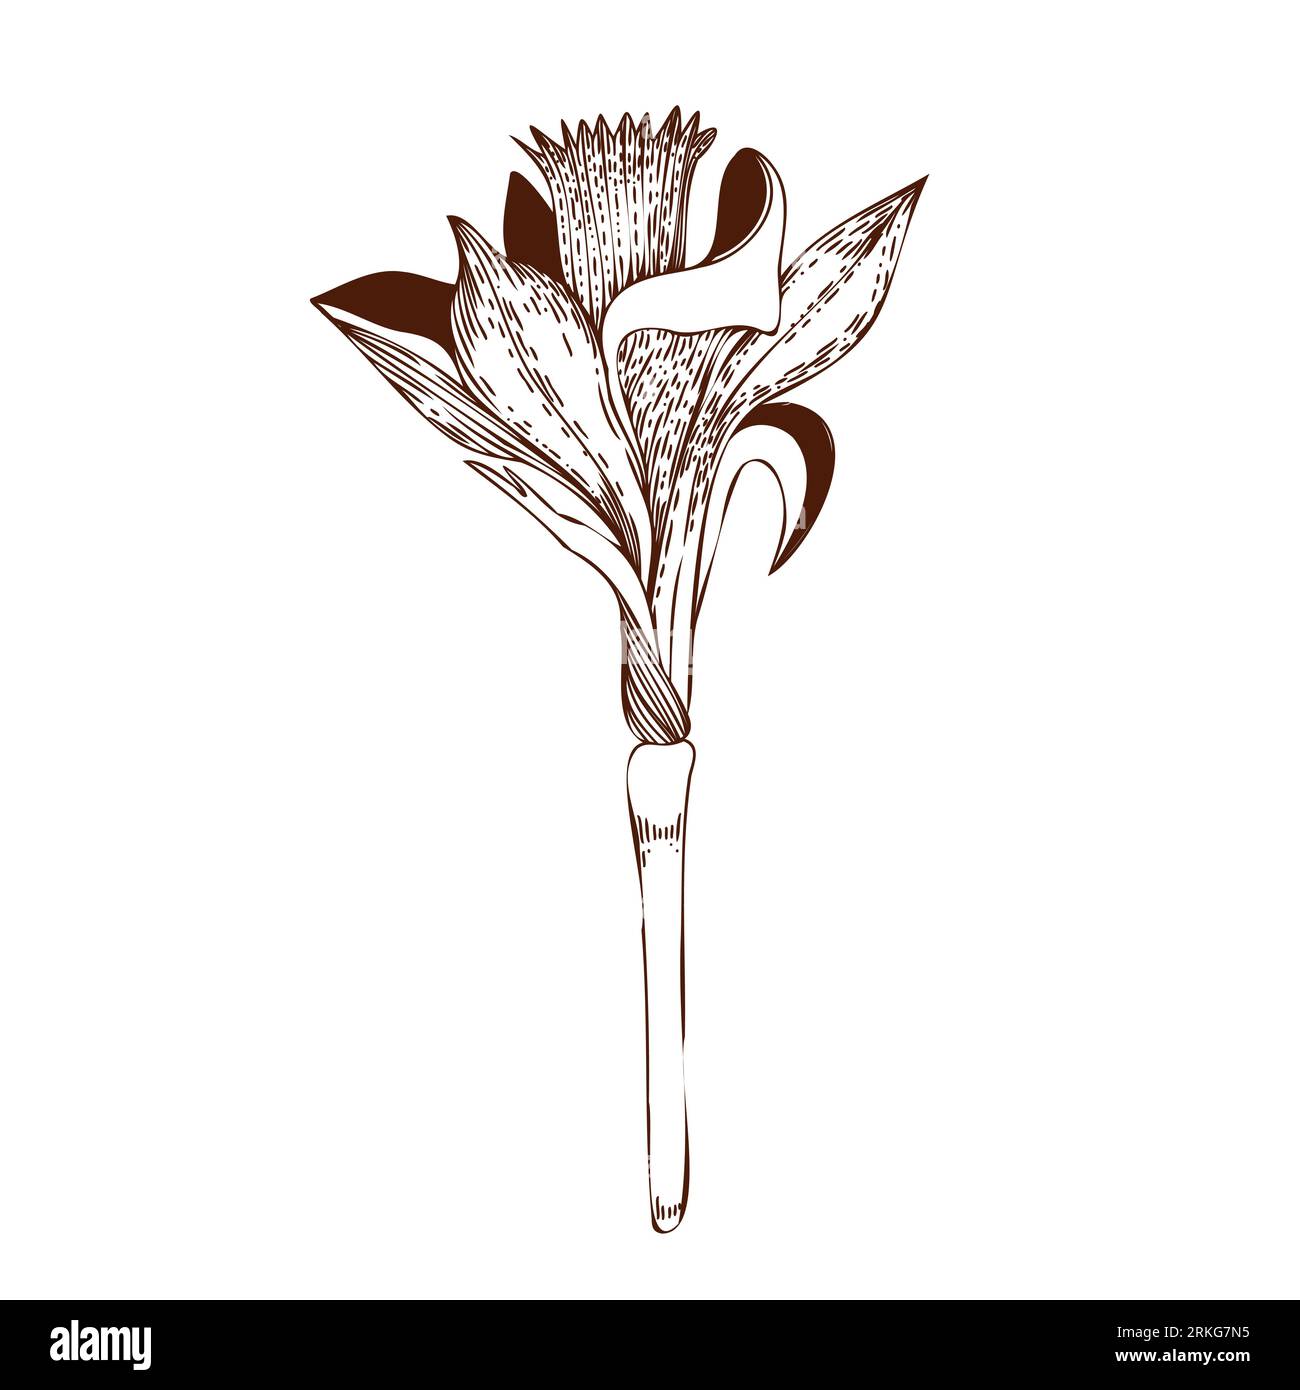 Illustration vectorielle. Fleur de Narcisse dessinée sur un comprimé en brun foncé sur un fond blanc. Pour la conception de cartes postales, invitations, pour la conception Illustration de Vecteur